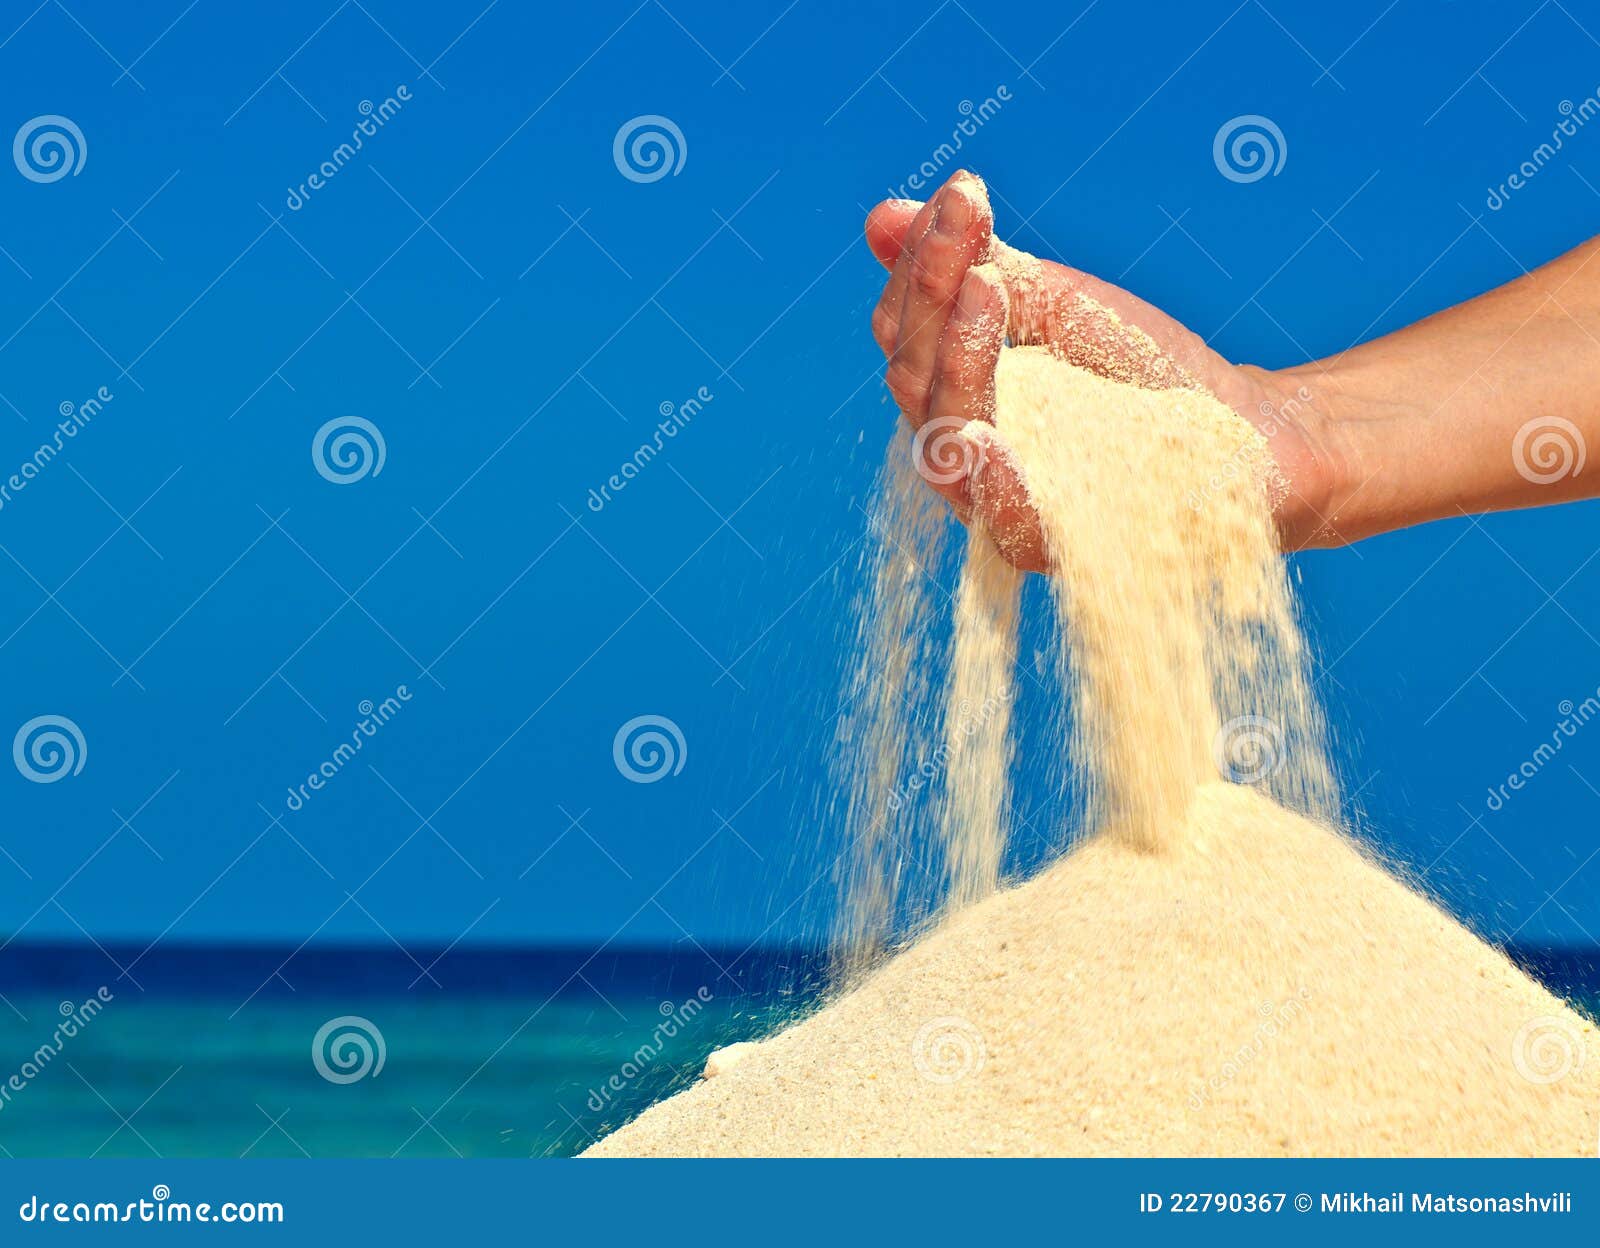 Сыплется. Сыпящийся песок. Песок сыпется. Песок сыпется из рук. Песок в руках.